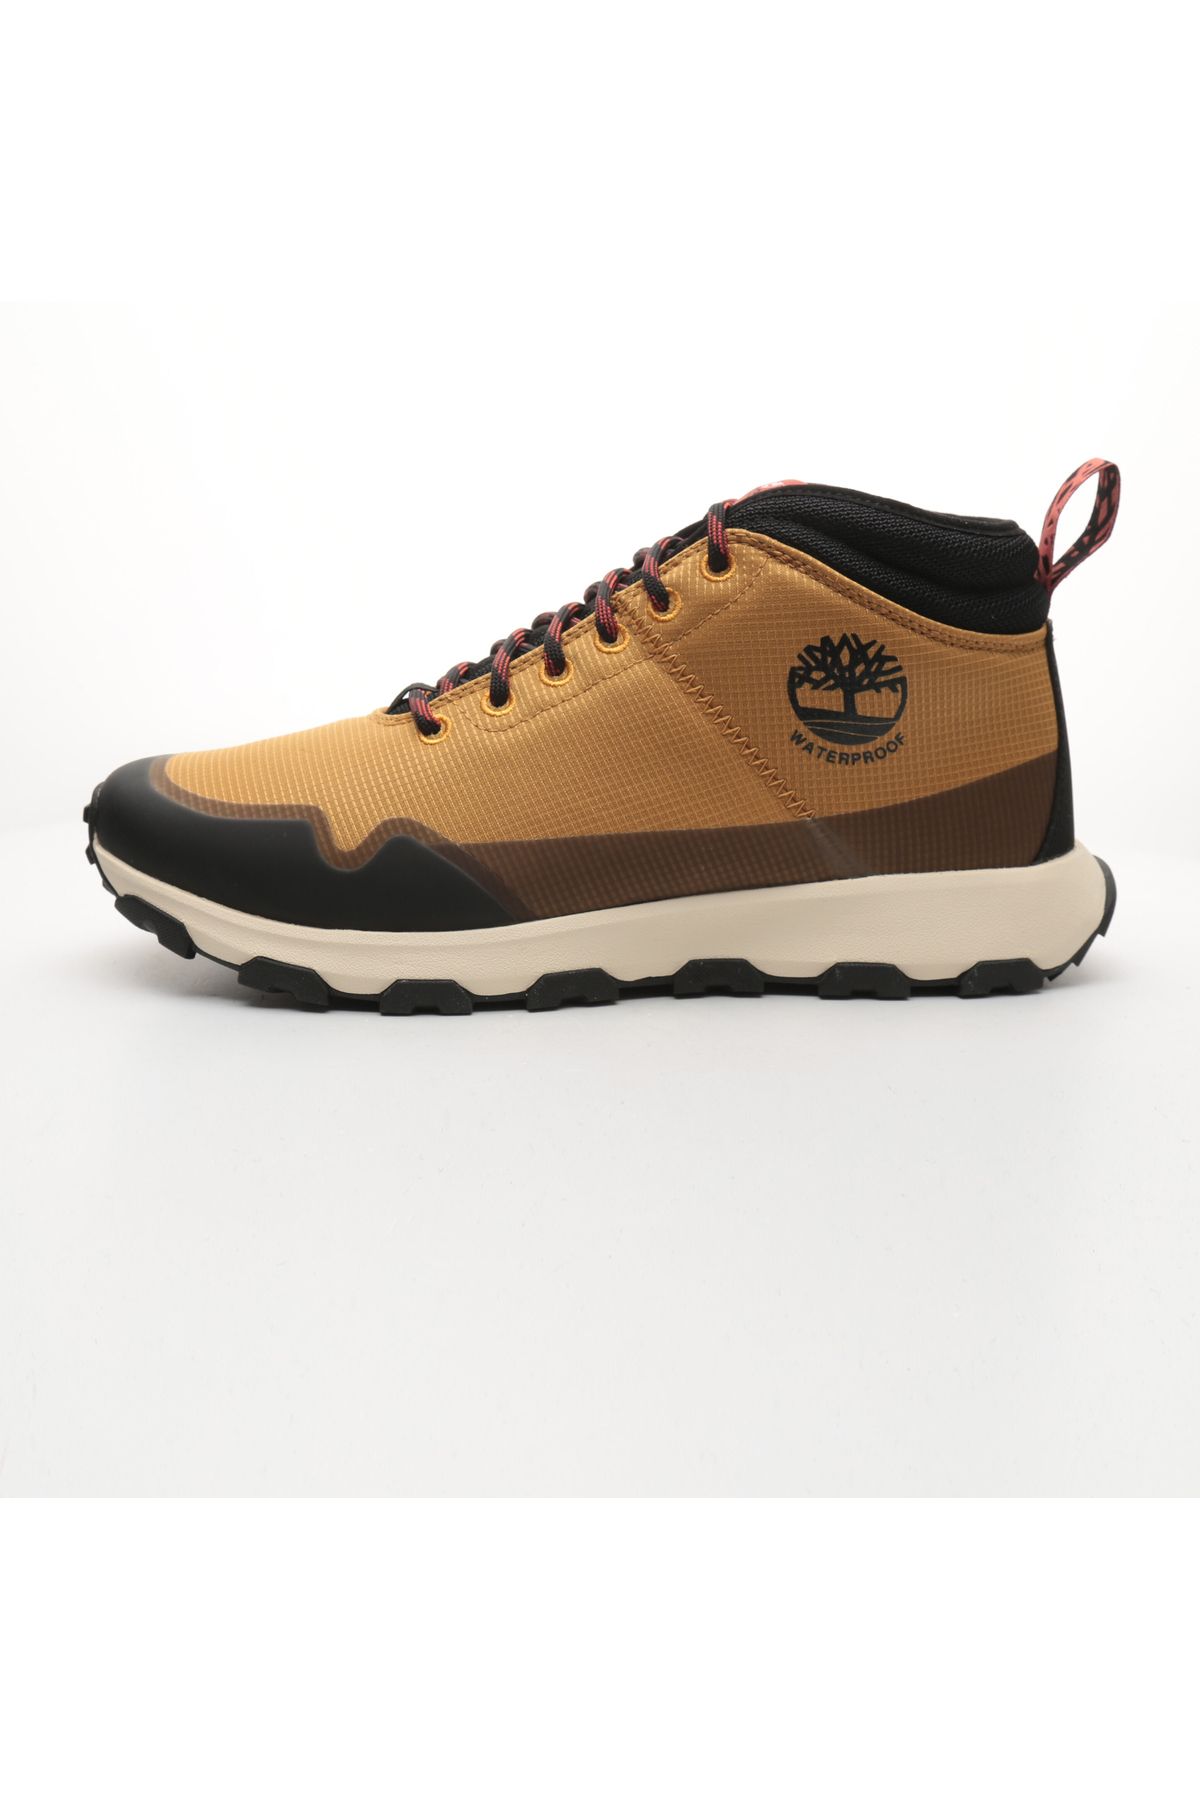 Timberland B0A62WM2311-R Timberland Mıd Lace Up Waterproof Hıkıng Boot Erkek Spor Ayakkabı Kahve